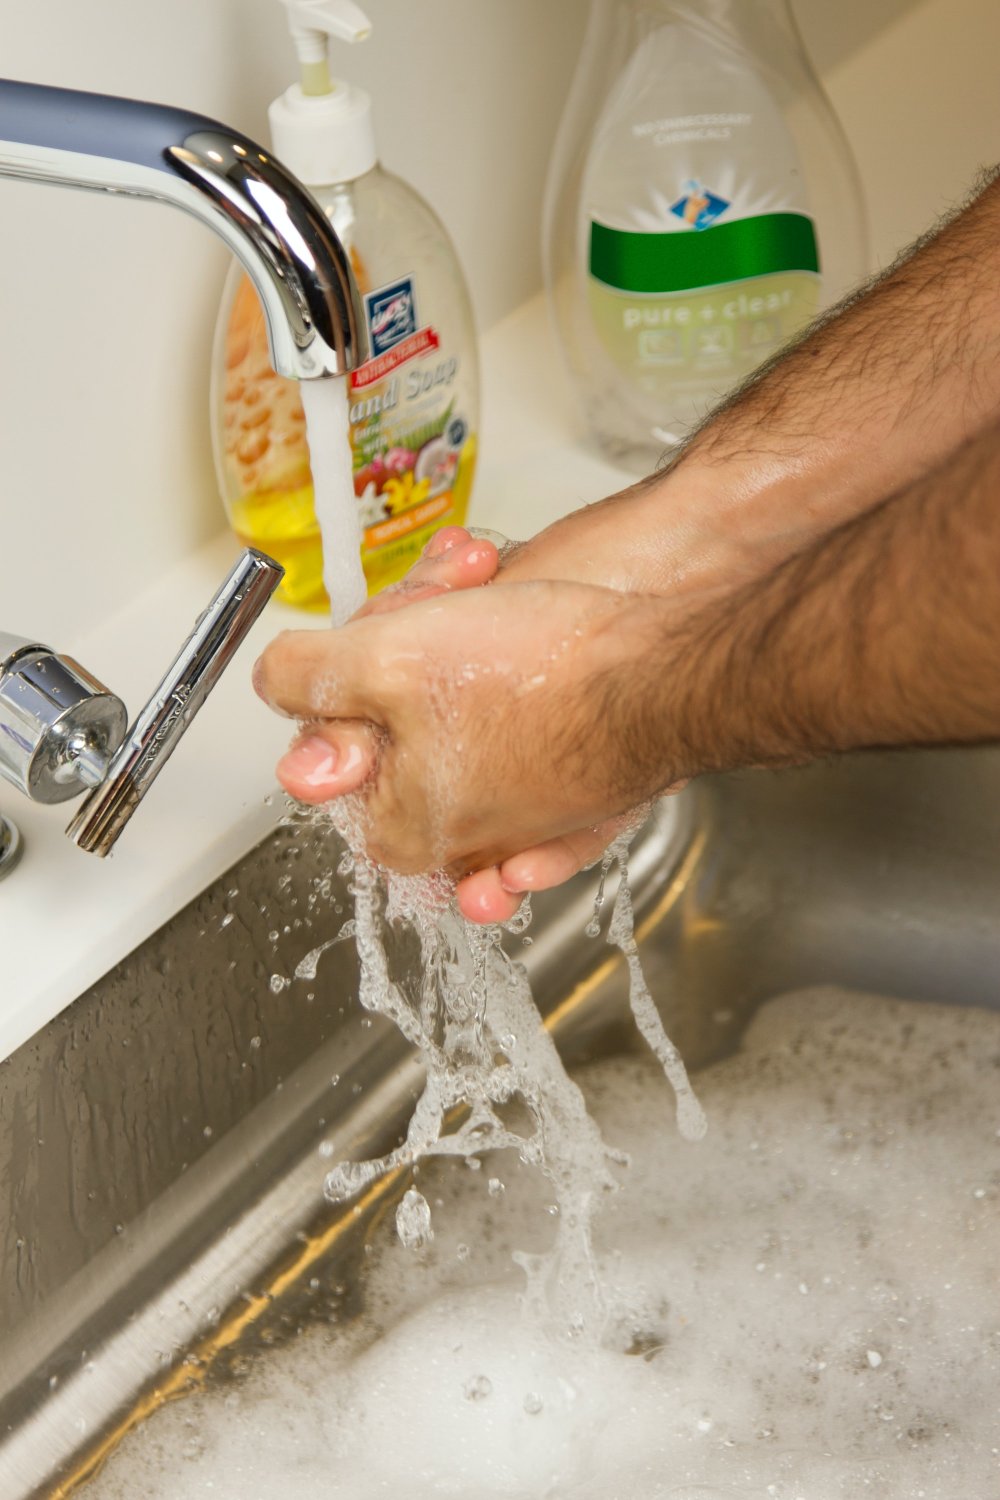 Handtvätt och virussanering som effektiva skydd